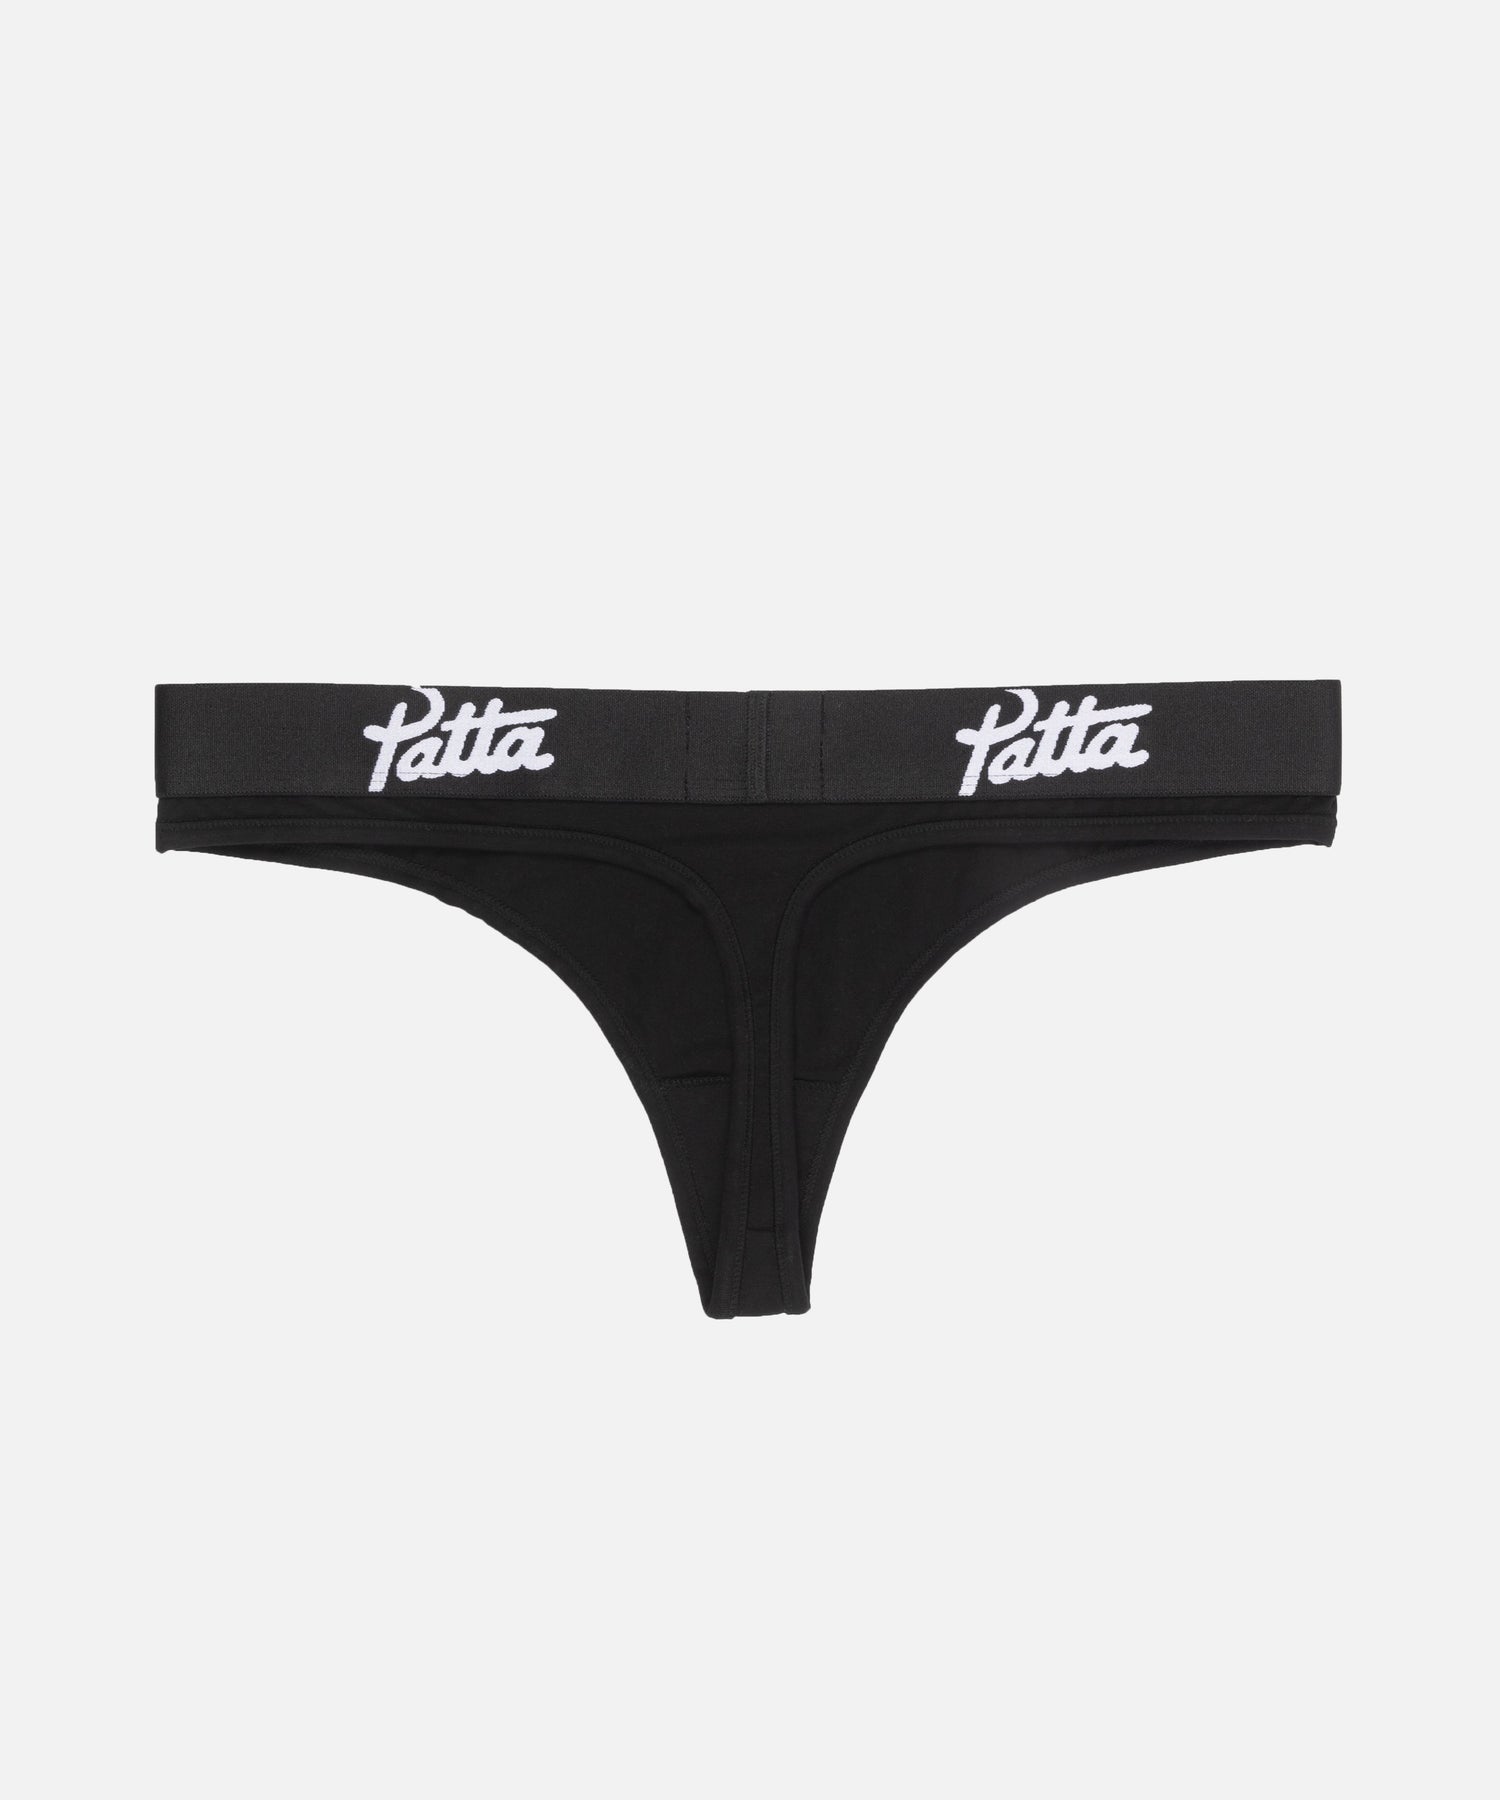 Patta Underwear Women Thong (Black)